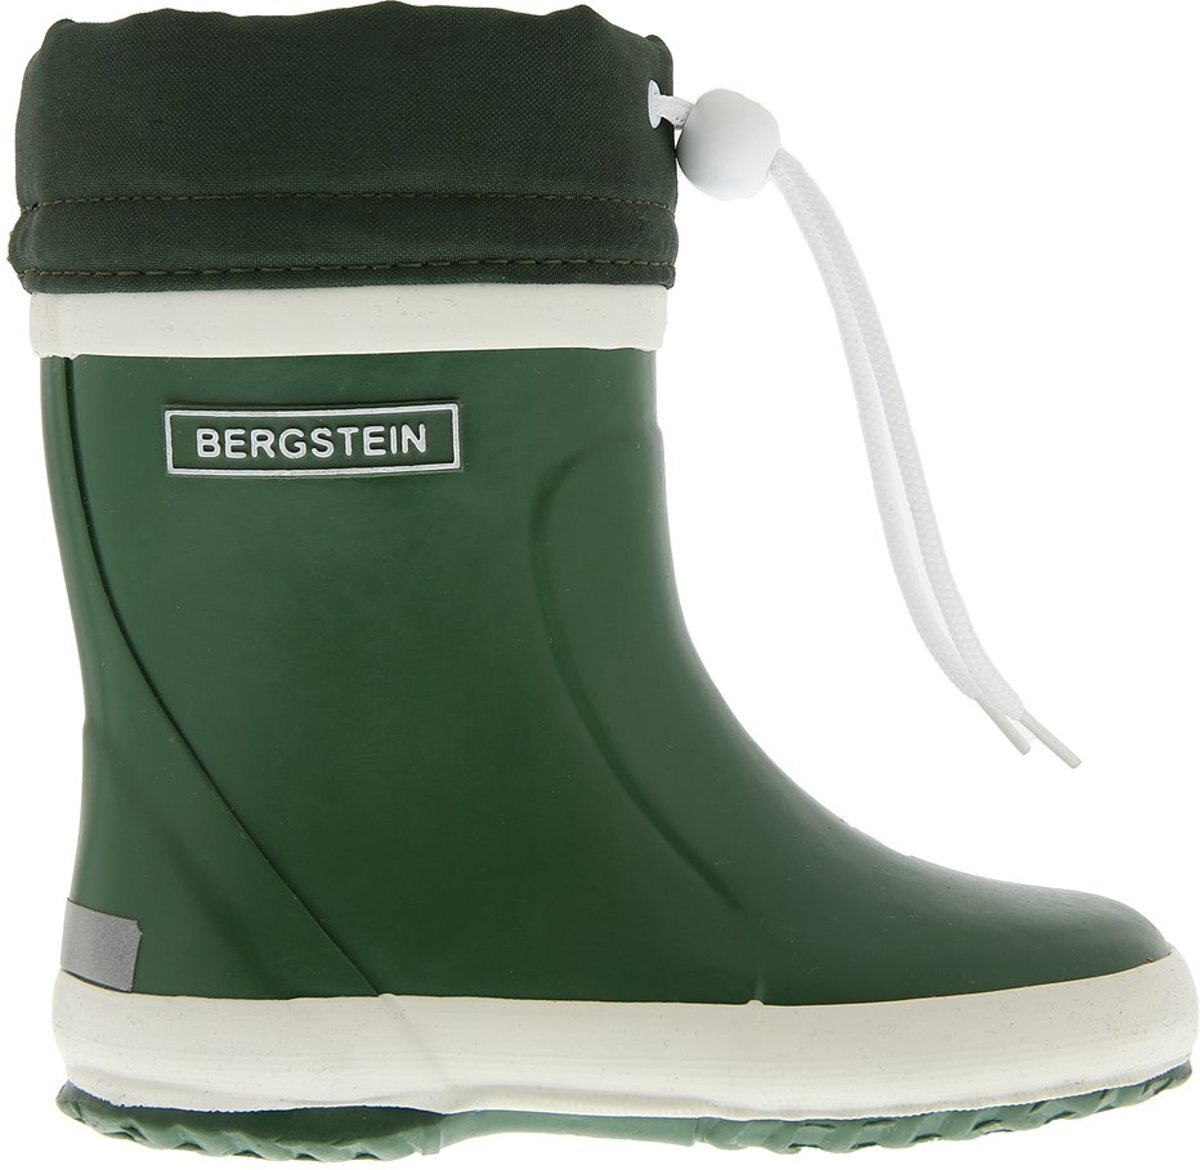 Bergstein Winterboot - Groen - Maat 23